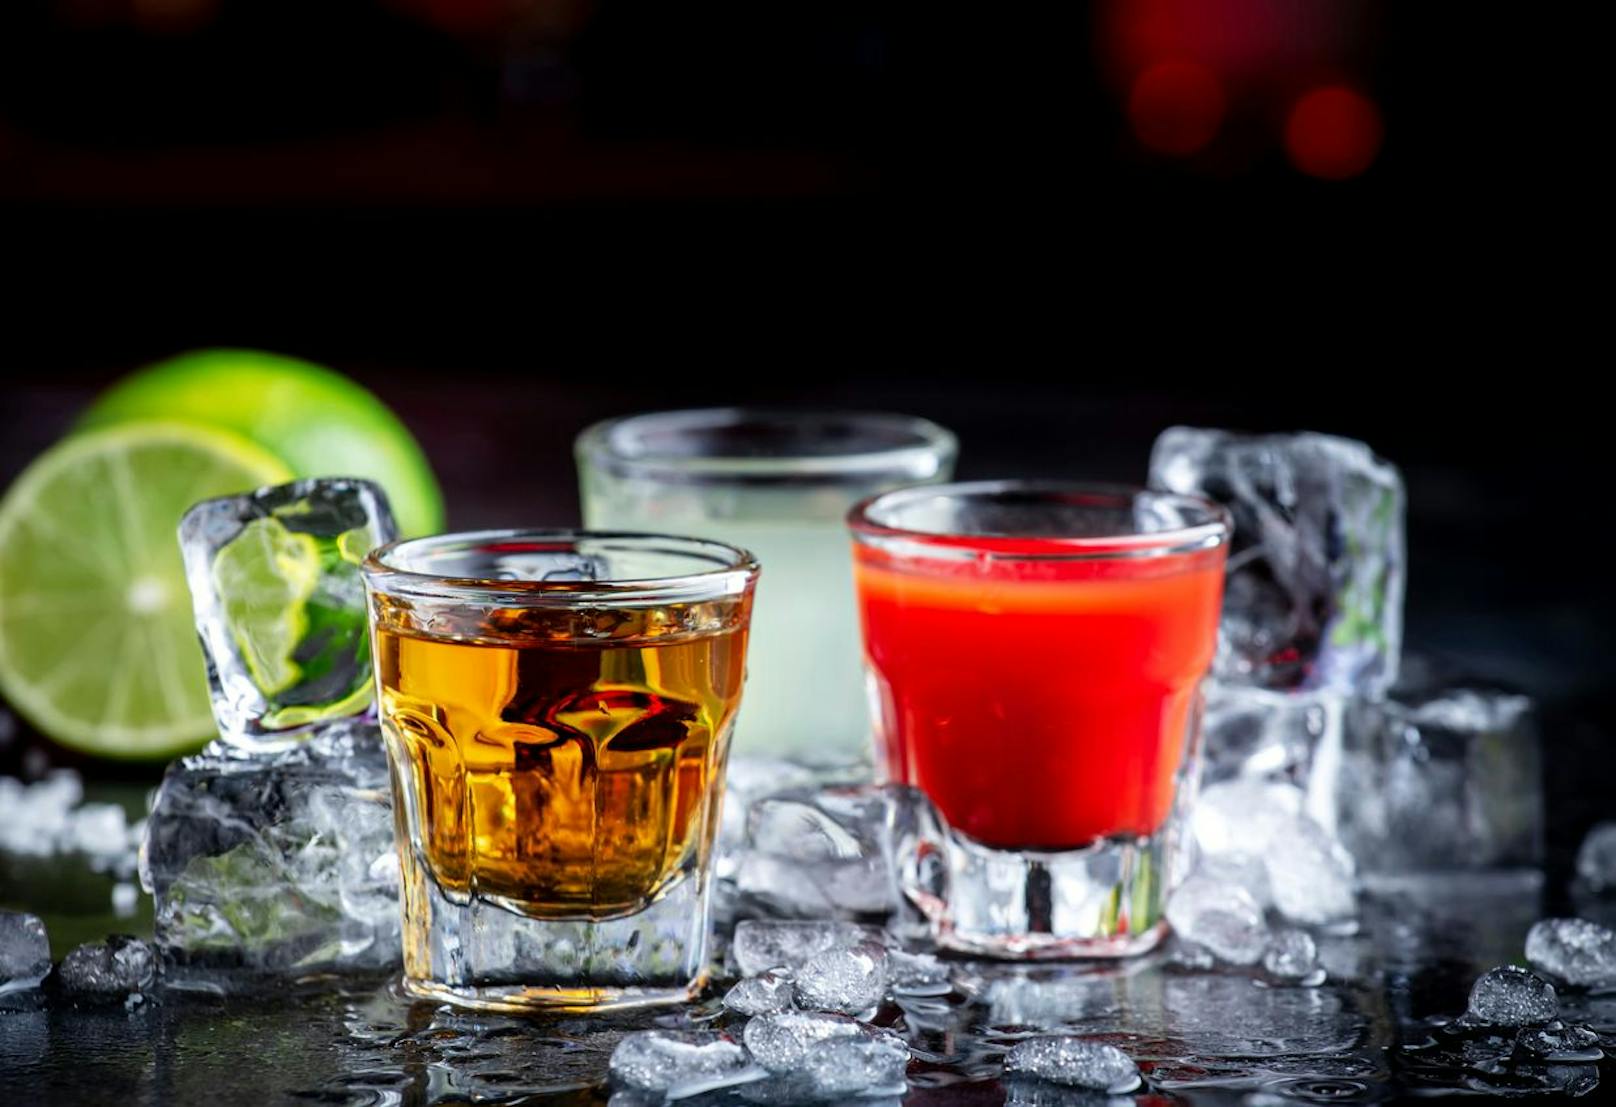 Bars in der beliebten griechischen Partystadt Kavos wurden geschlossen, weil sie Getränkereste an Touristen weiterverkauften. (Symbolbild).